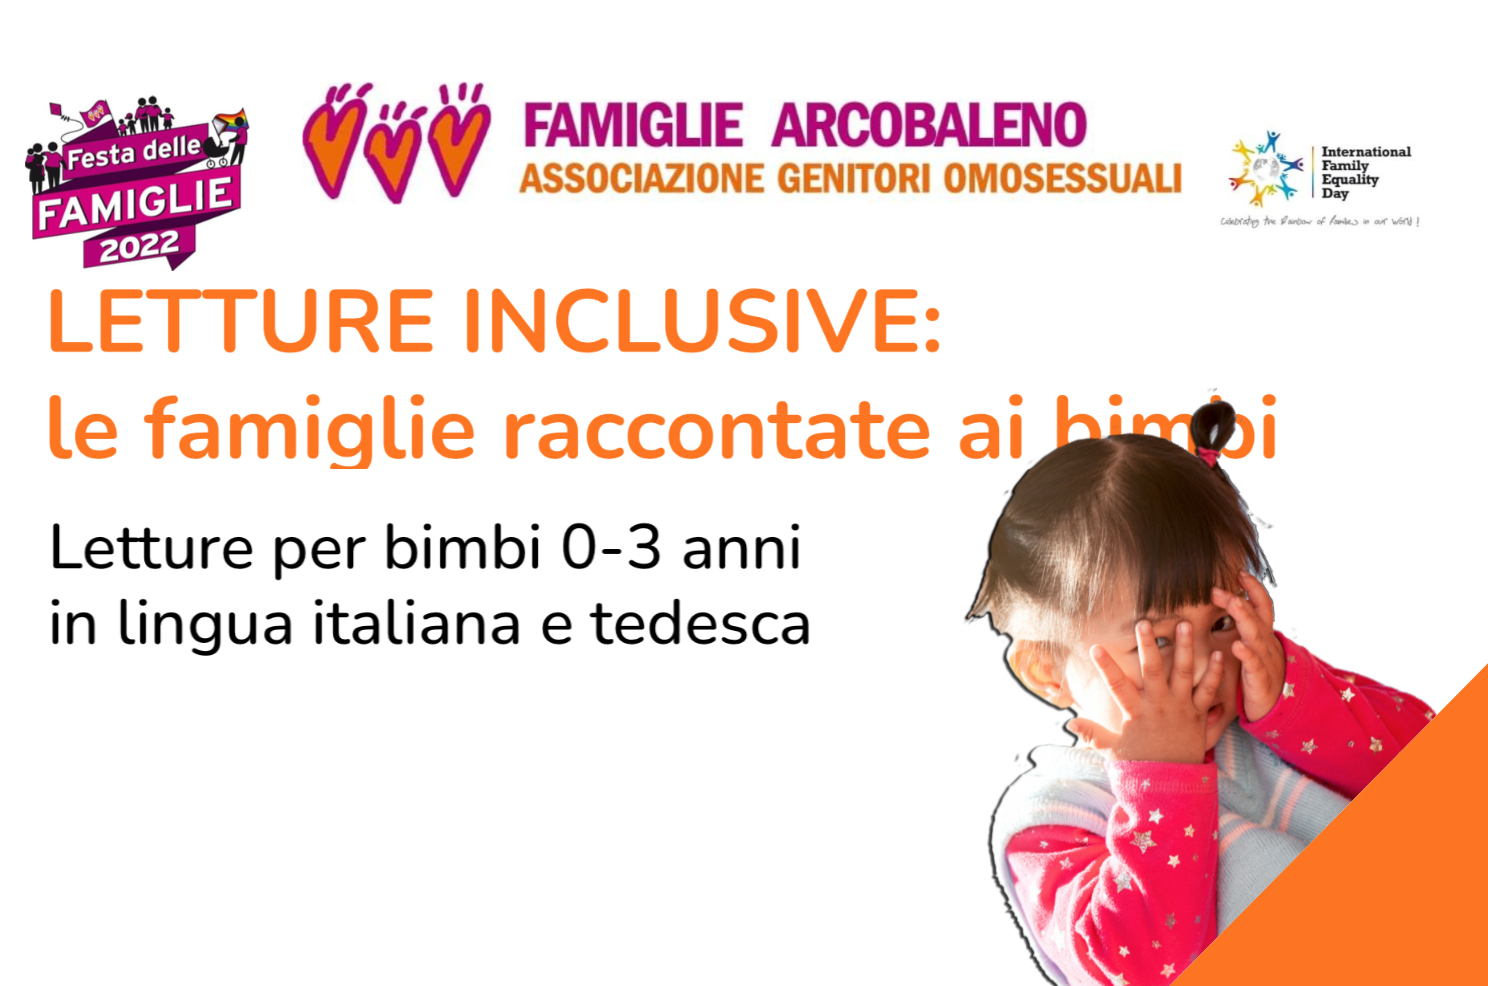 Gender. Pro Vita & Famiglia: «A Bressanone "Famiglie Arcobaleno" indottrina bambini di tre anni» 1